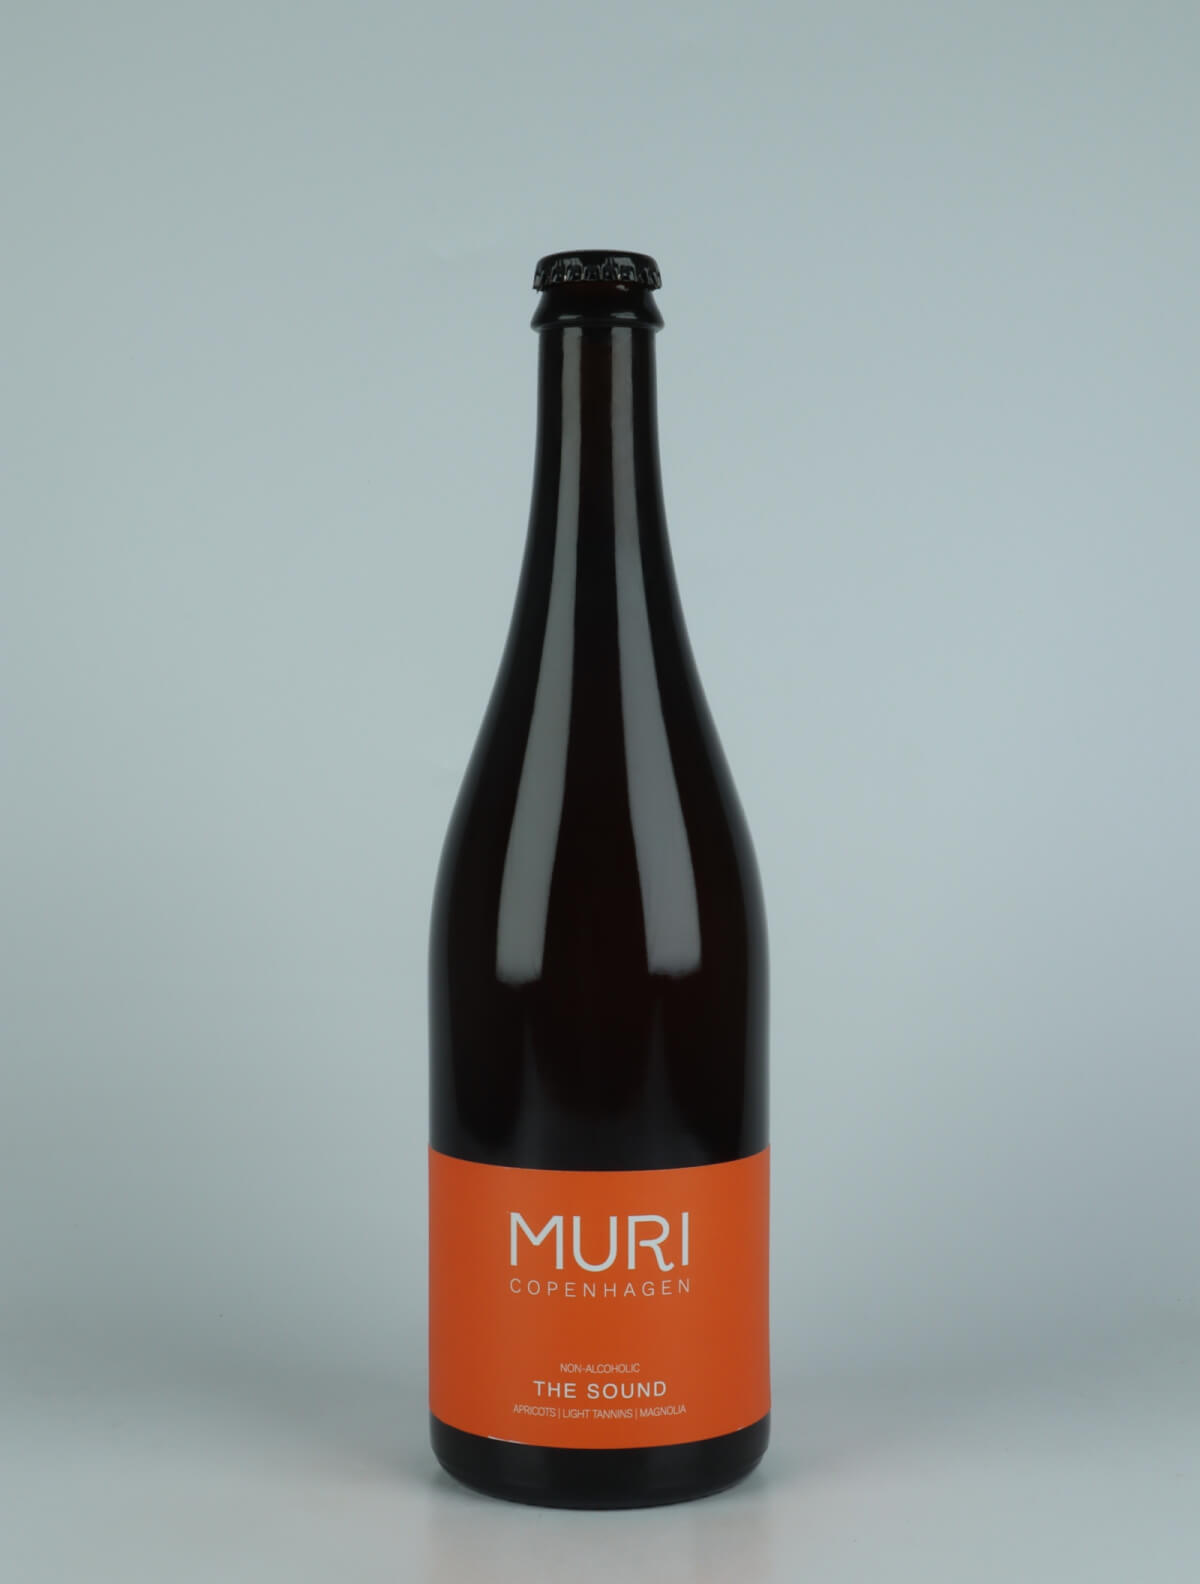 A bottle N.V. The Sound Non-alcoholic from Muri, Copenhagen in Denmark